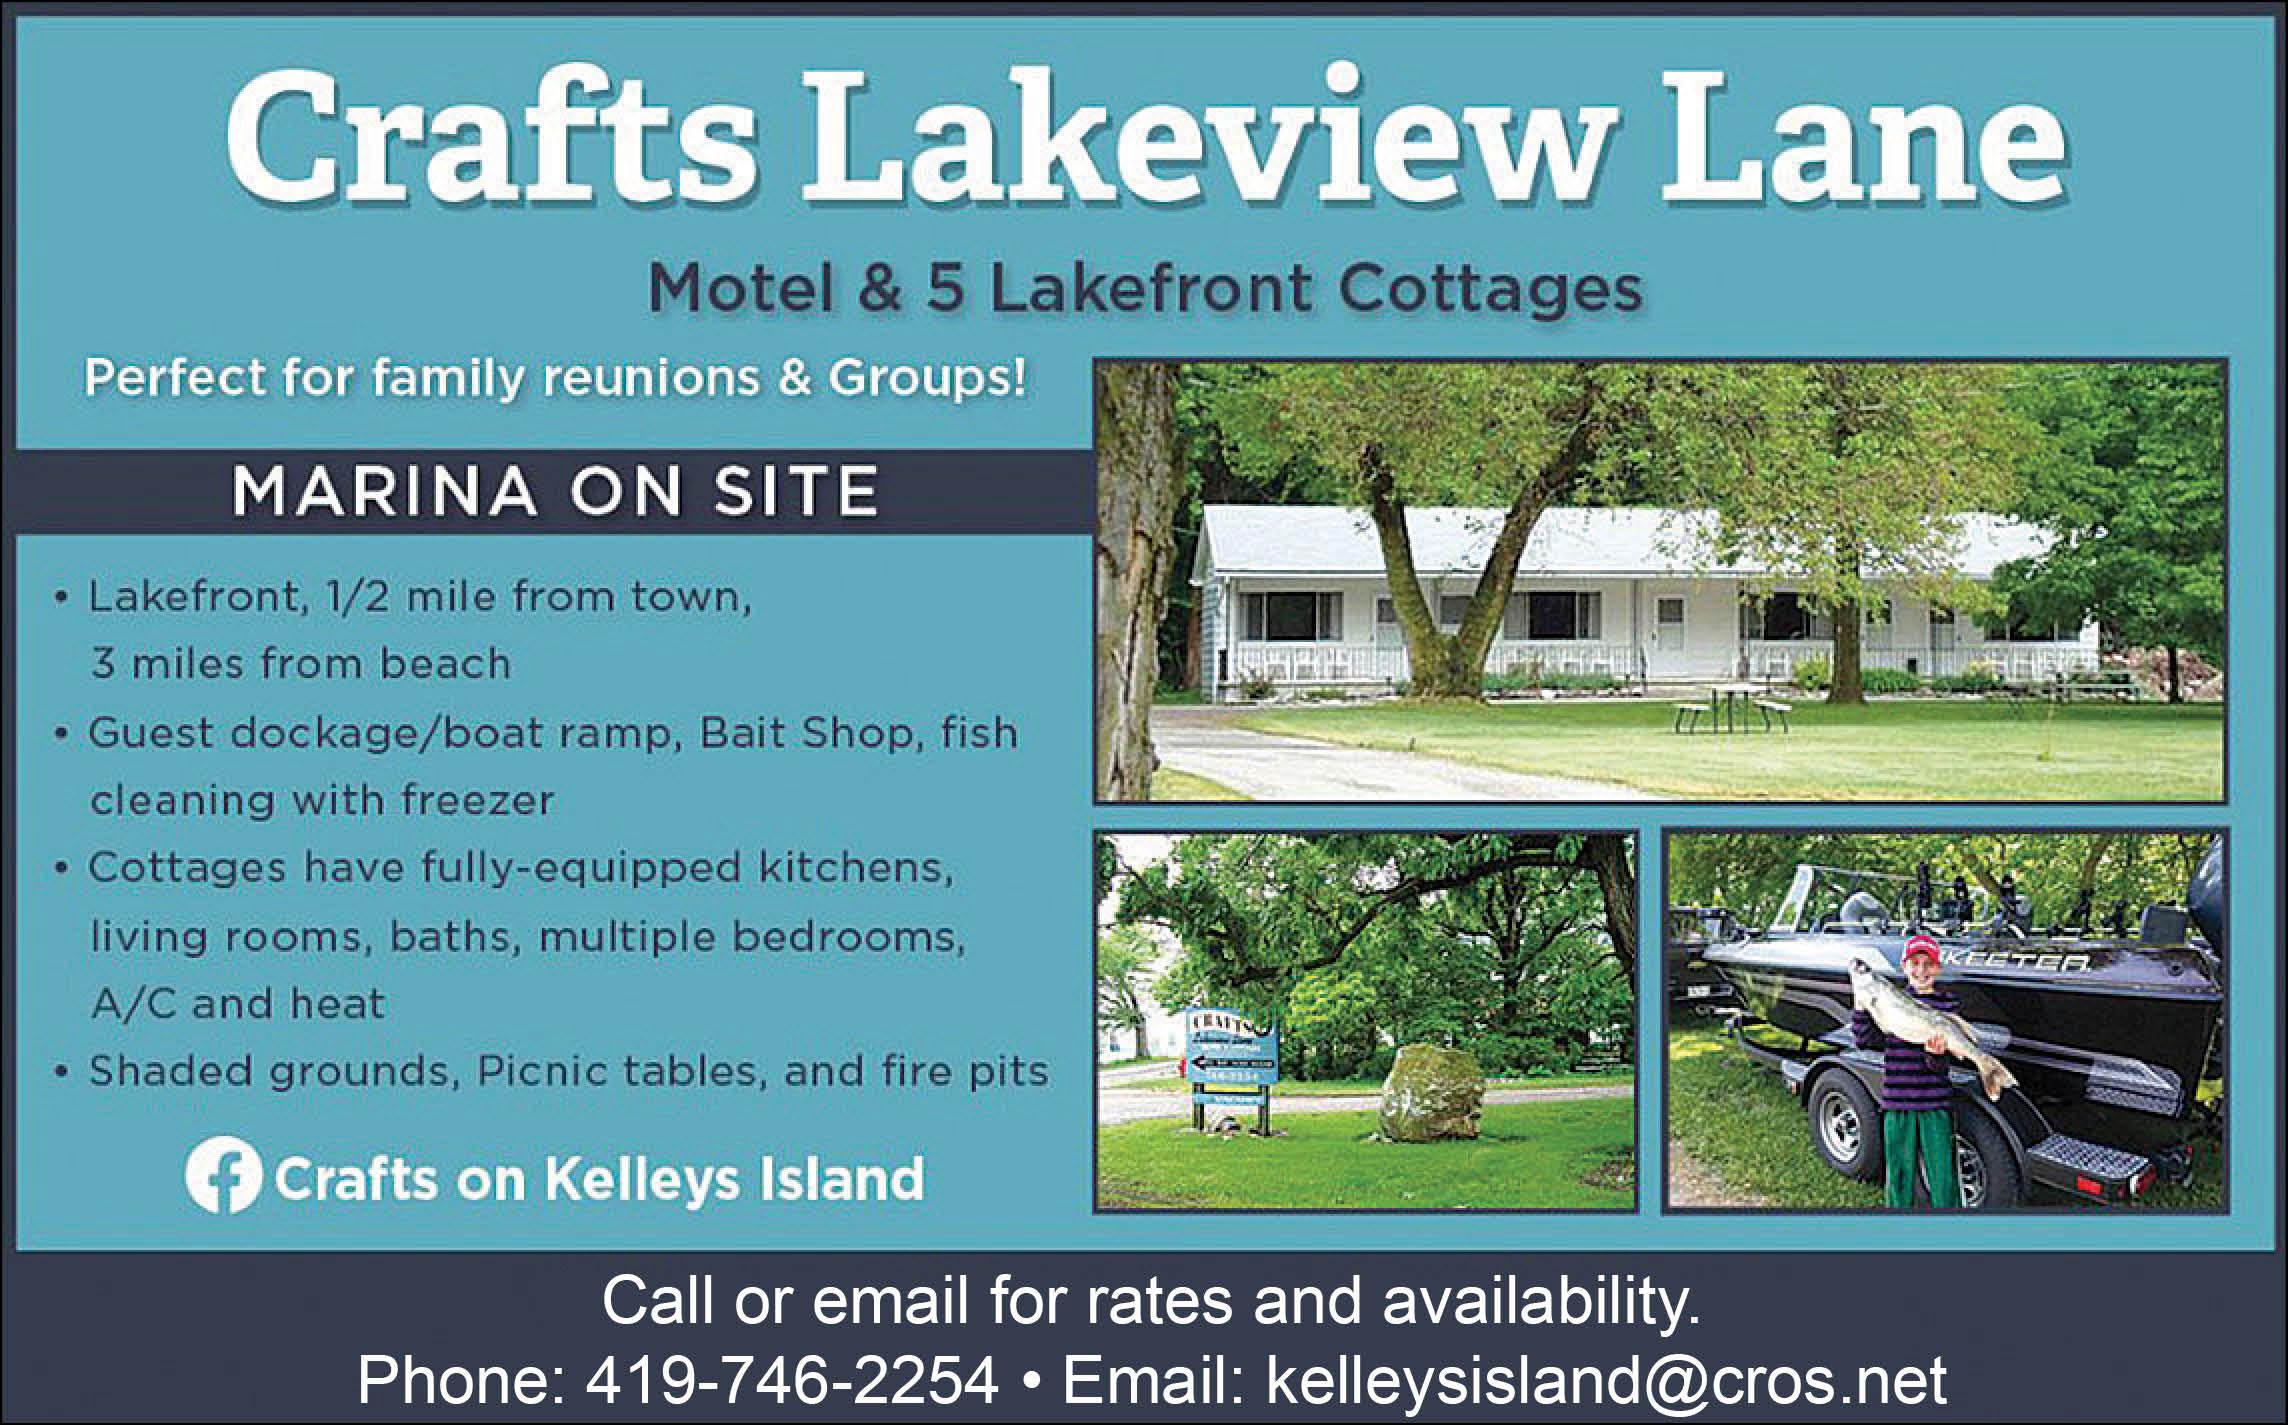 Crafts Lakeview Lane